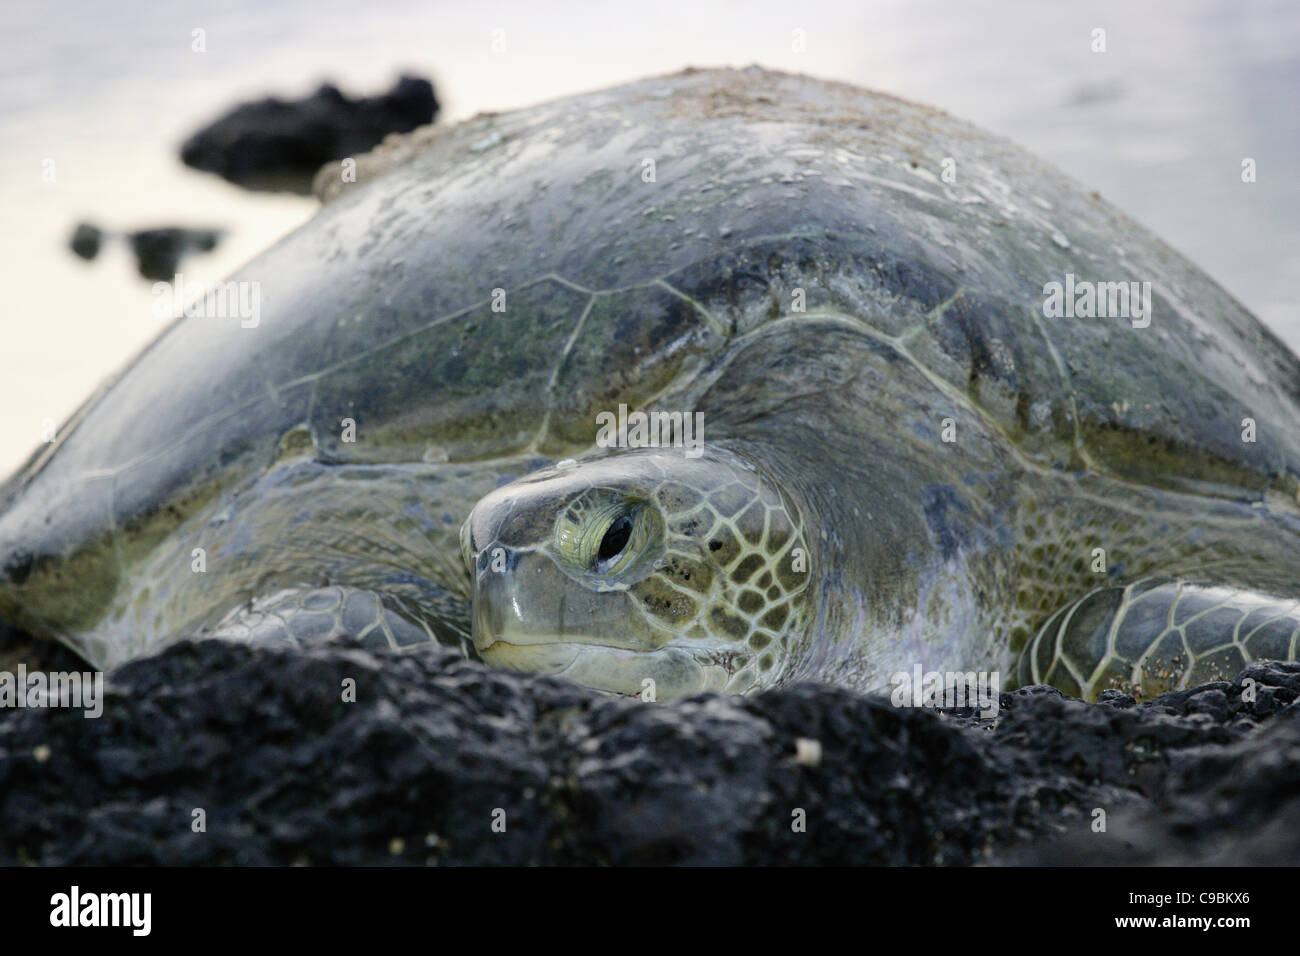 Afrika, Guinea-Bissau, grüne Meeresschildkröte auf Stein, Nahaufnahme Stockfoto